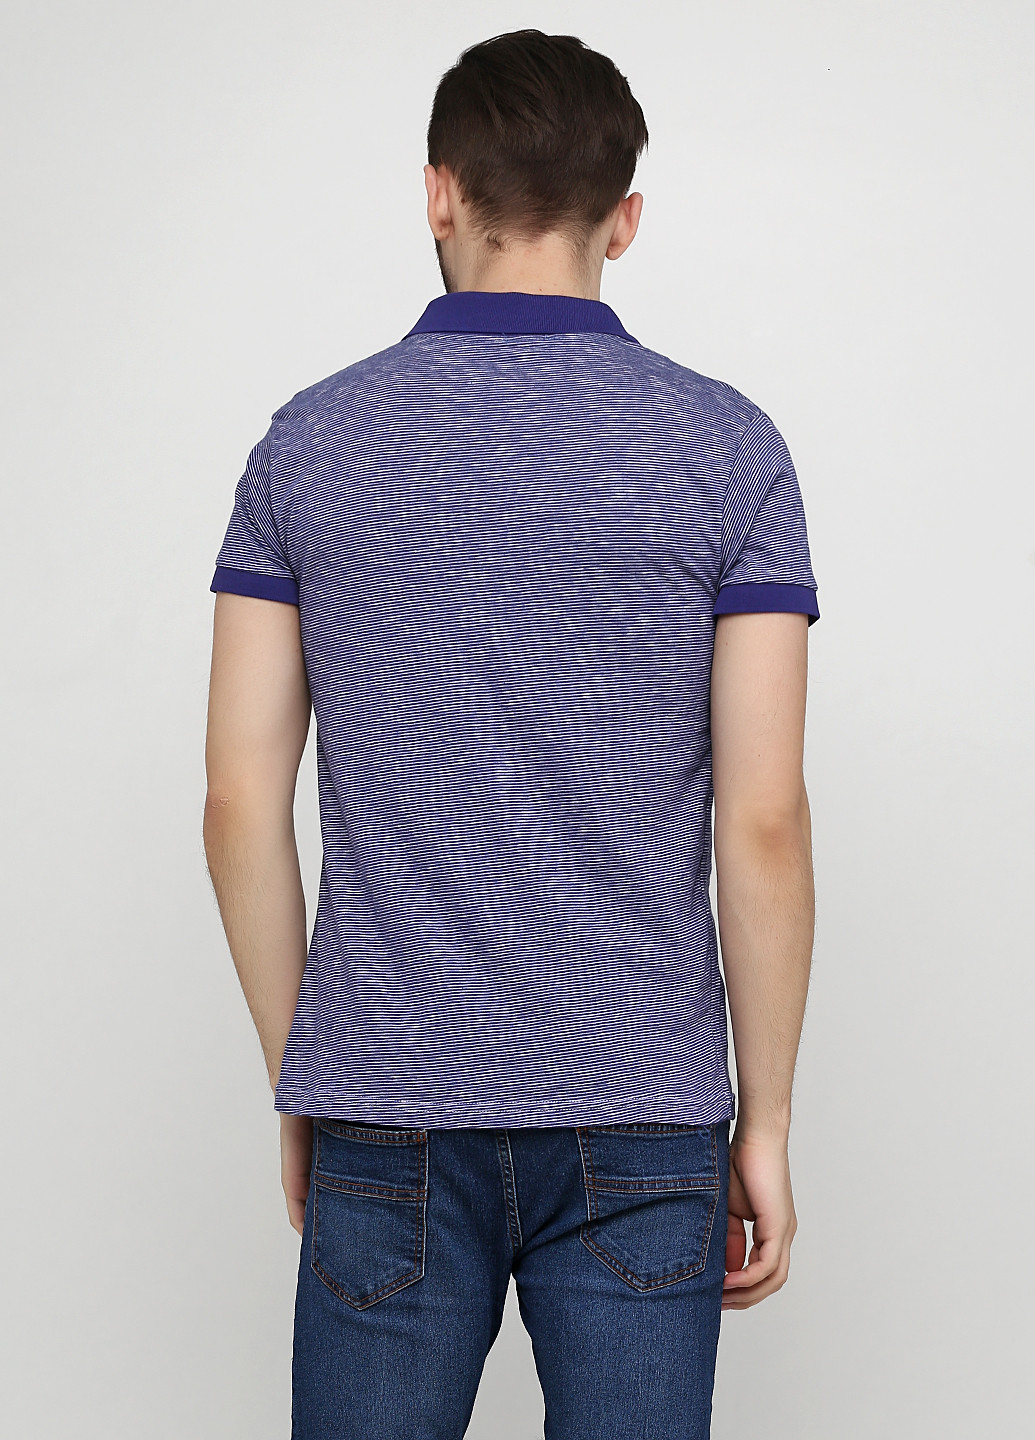 Светло-фиолетовая футболка-поло для мужчин Chiarotex в полоску